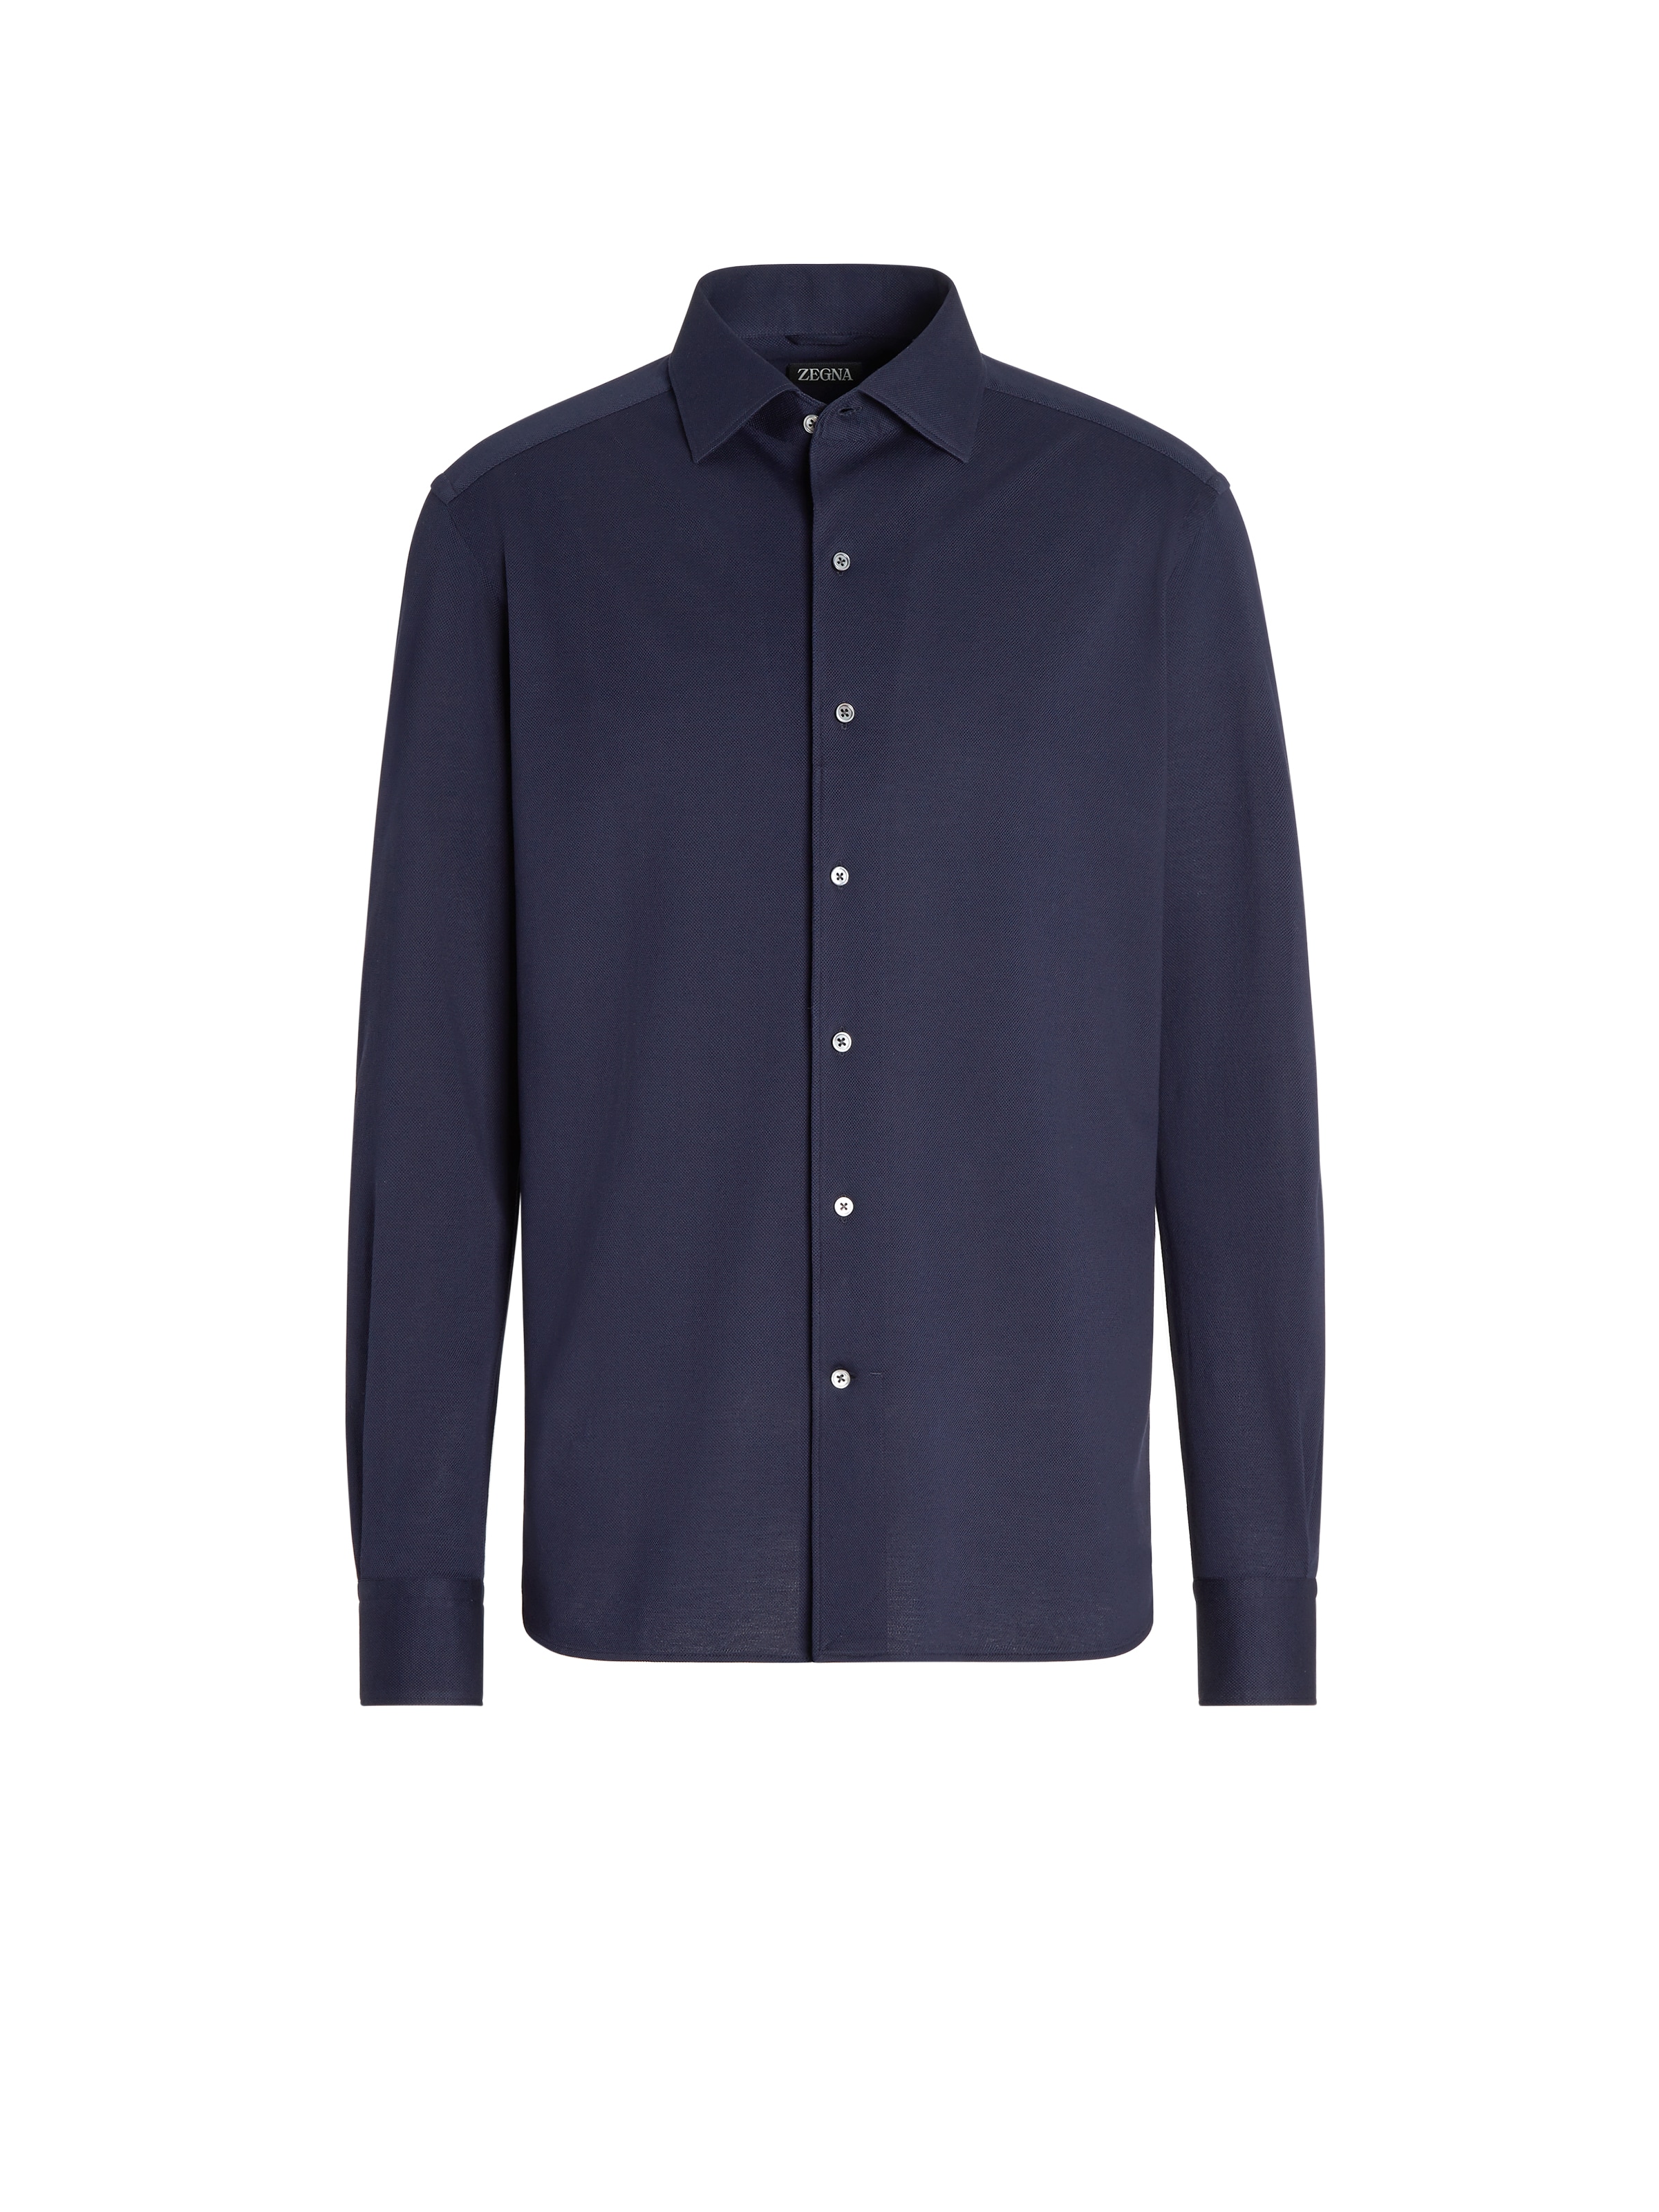 Zegna Navy Blue Pure Cotton Jersey Long-sleeve Shirt